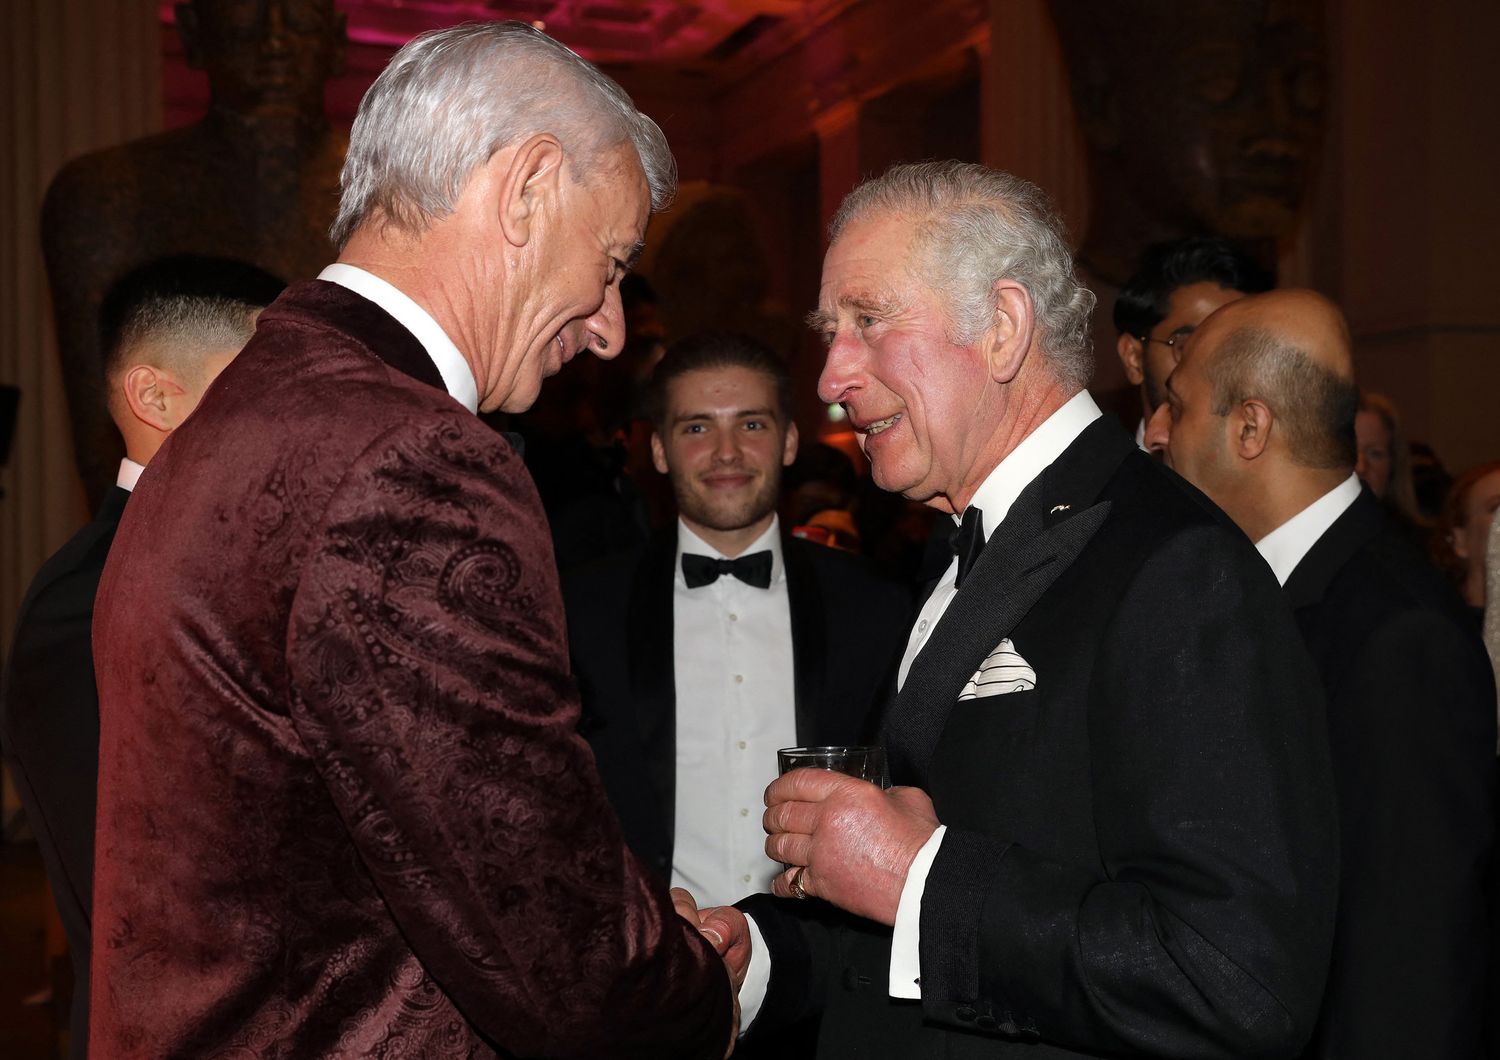 Il principe Carlo con l'ex calciatore Ian Rush il giorno prima di risultare positivo al Covid